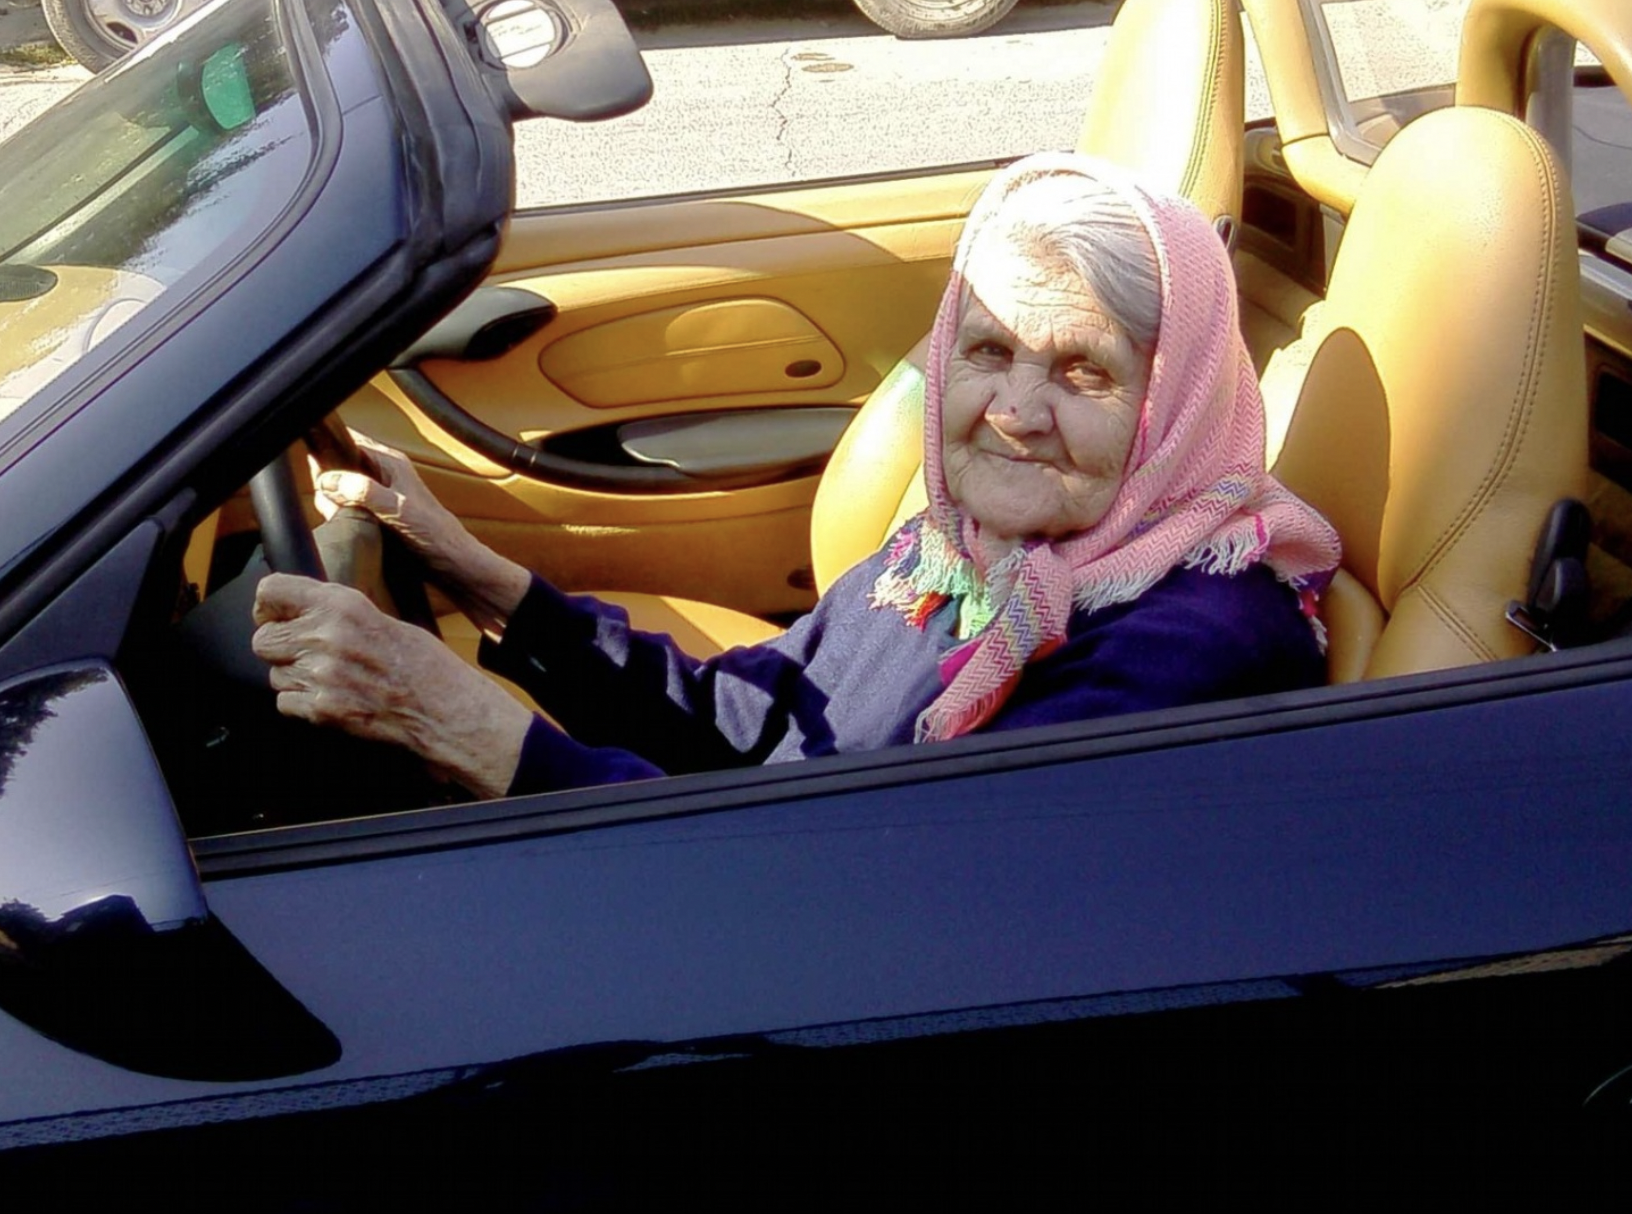 Older woman in a car | Source: Shutterstock